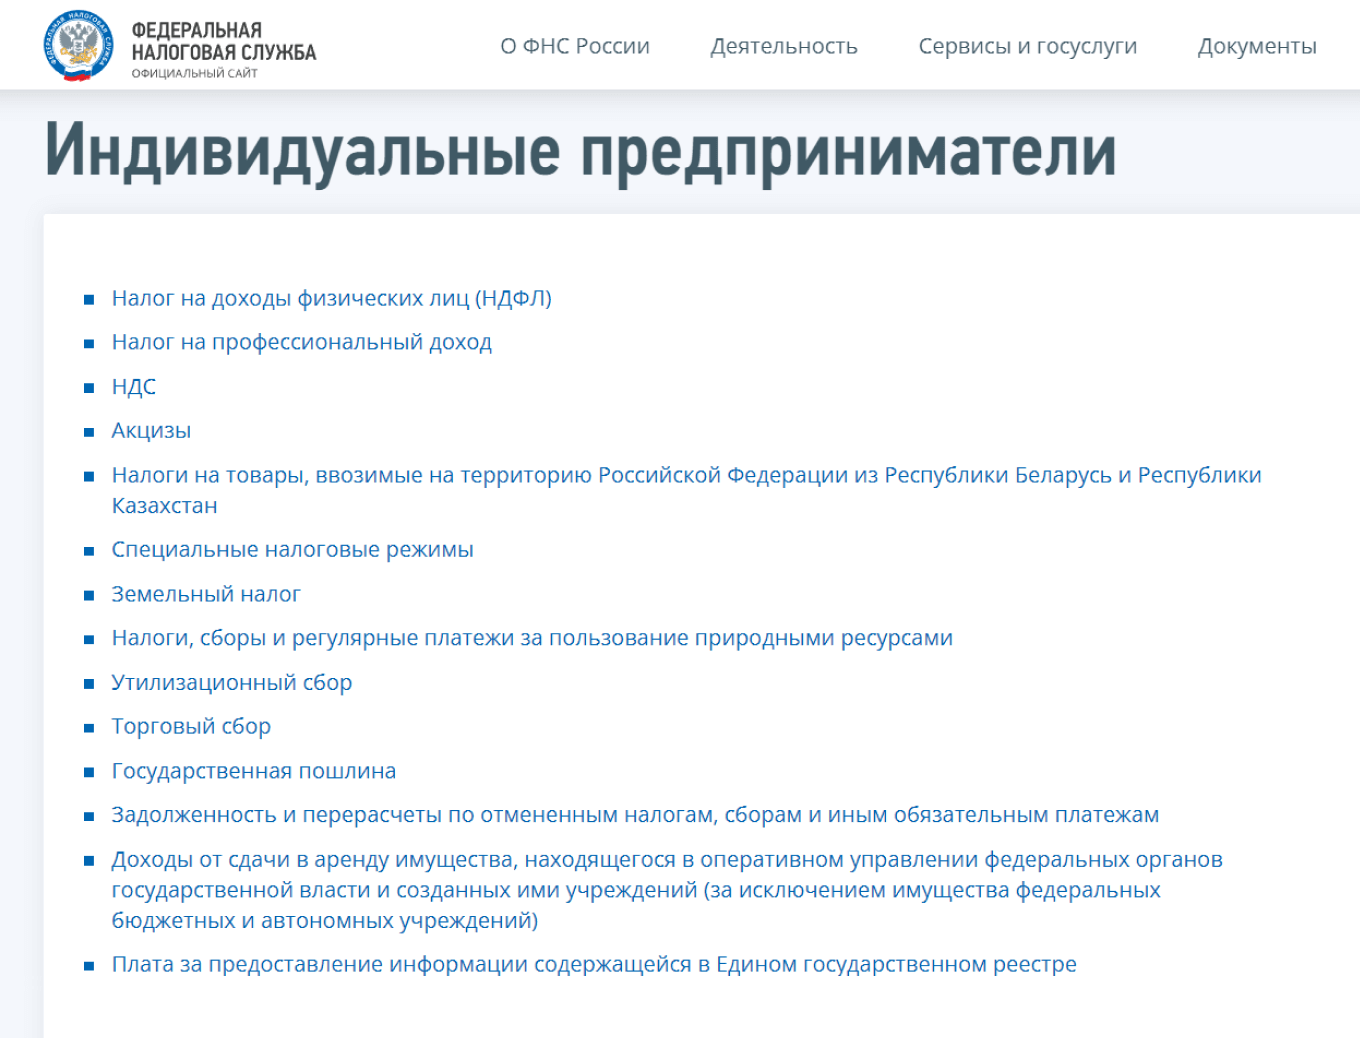 Коды классификации доходов бюджетов Российской Федерации